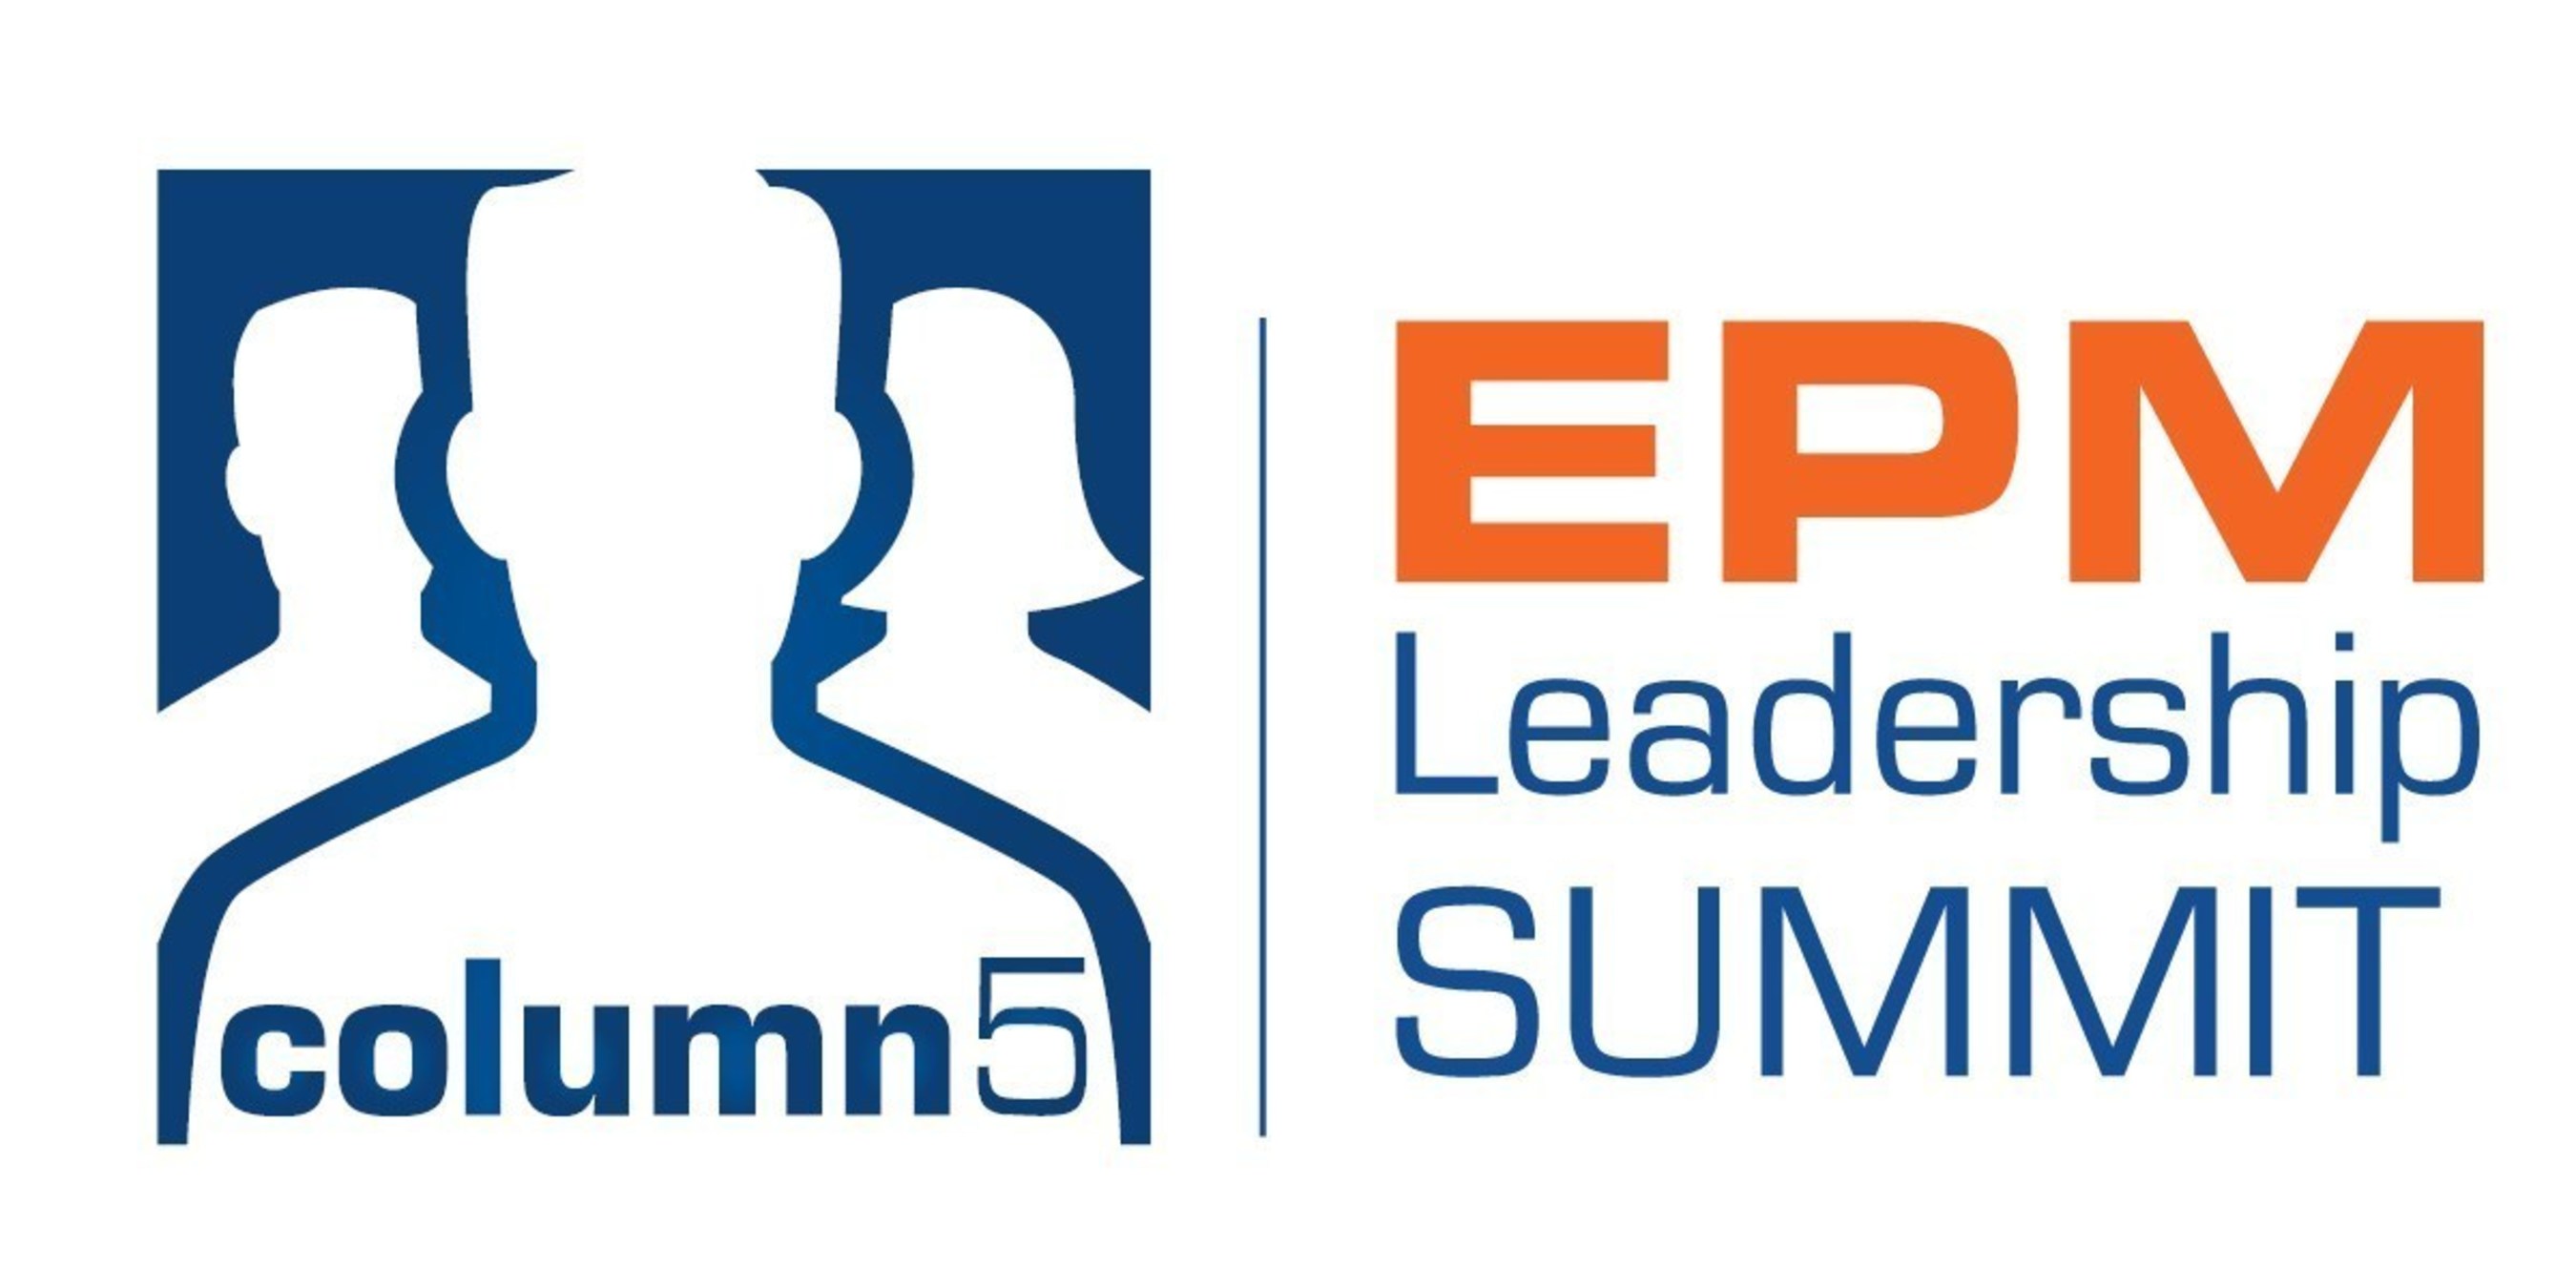 Column5 EPM Leadership Summit